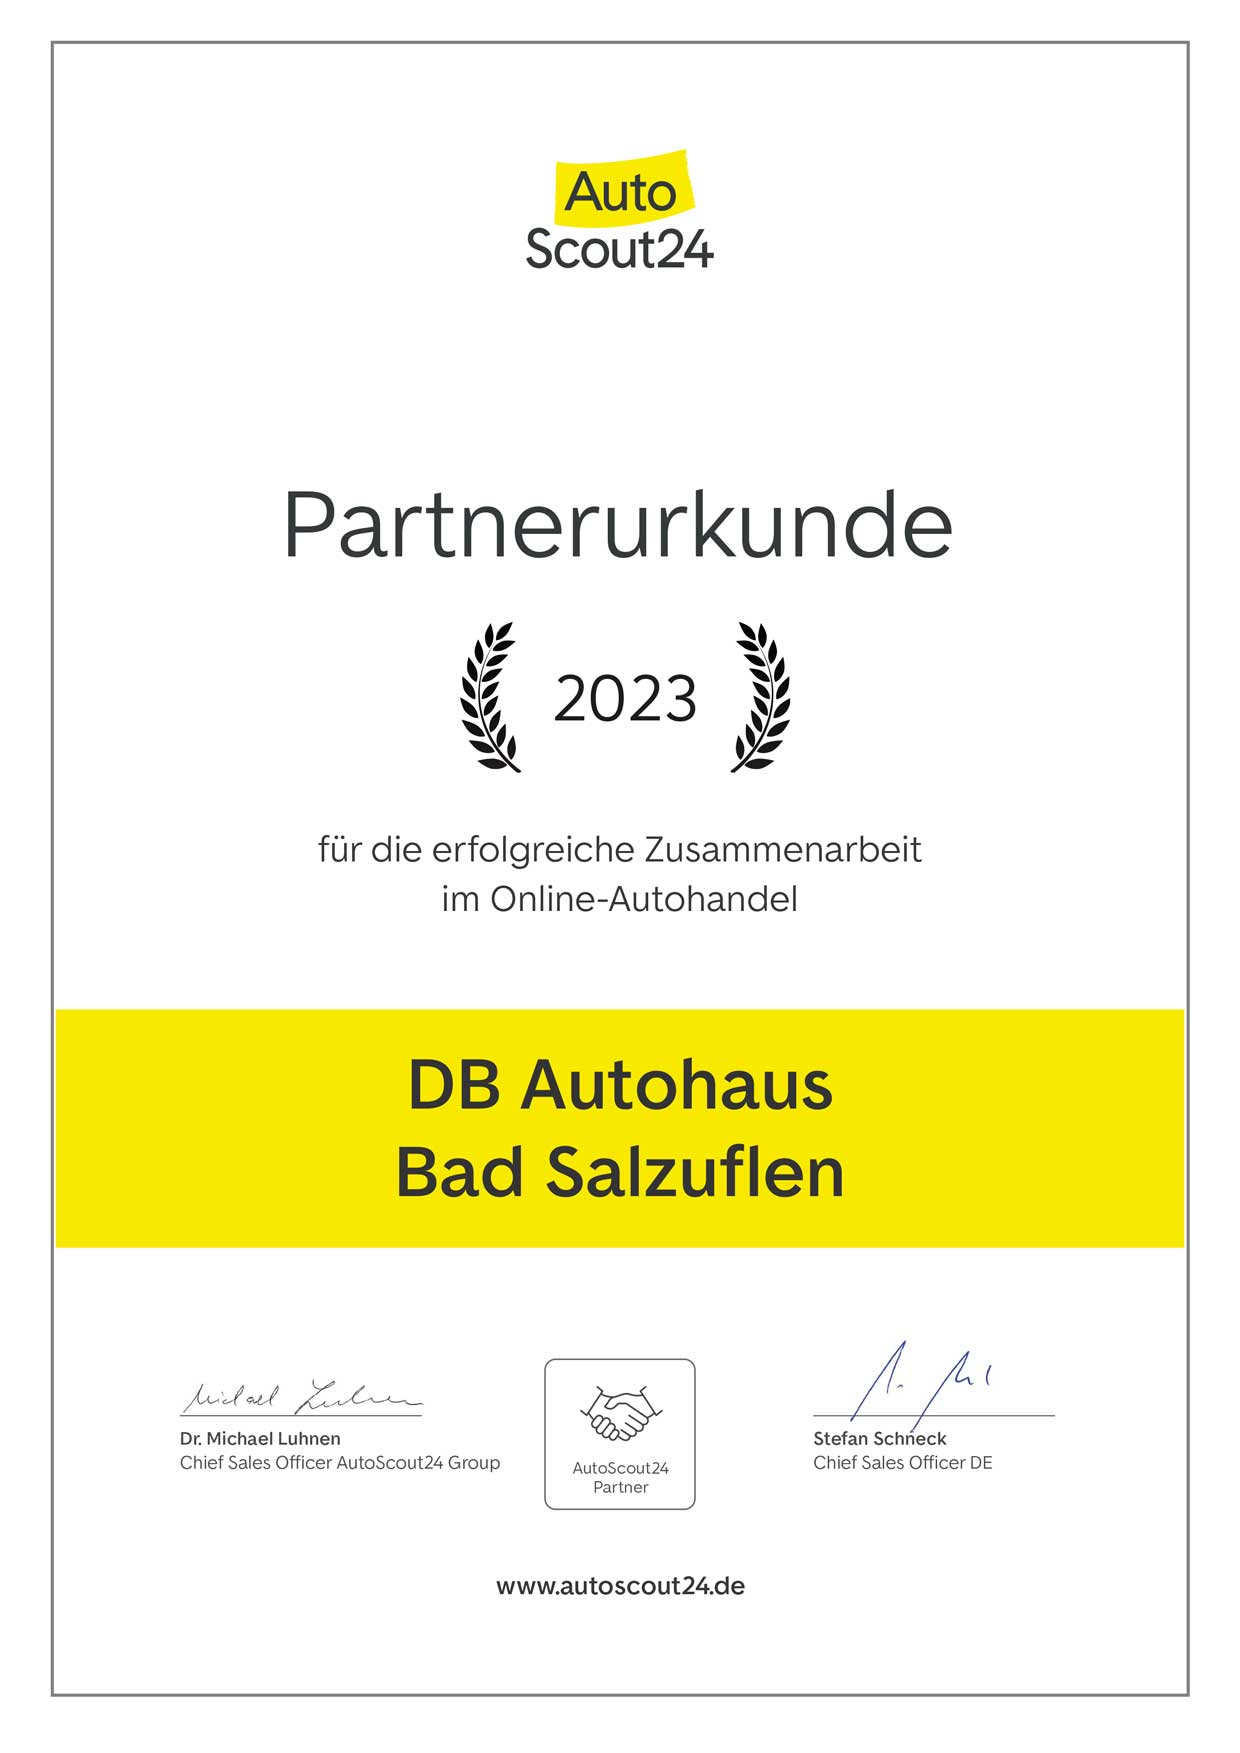 Partnerurkunde von Autoscout24 für DB Autohaus Bad Salzuflen